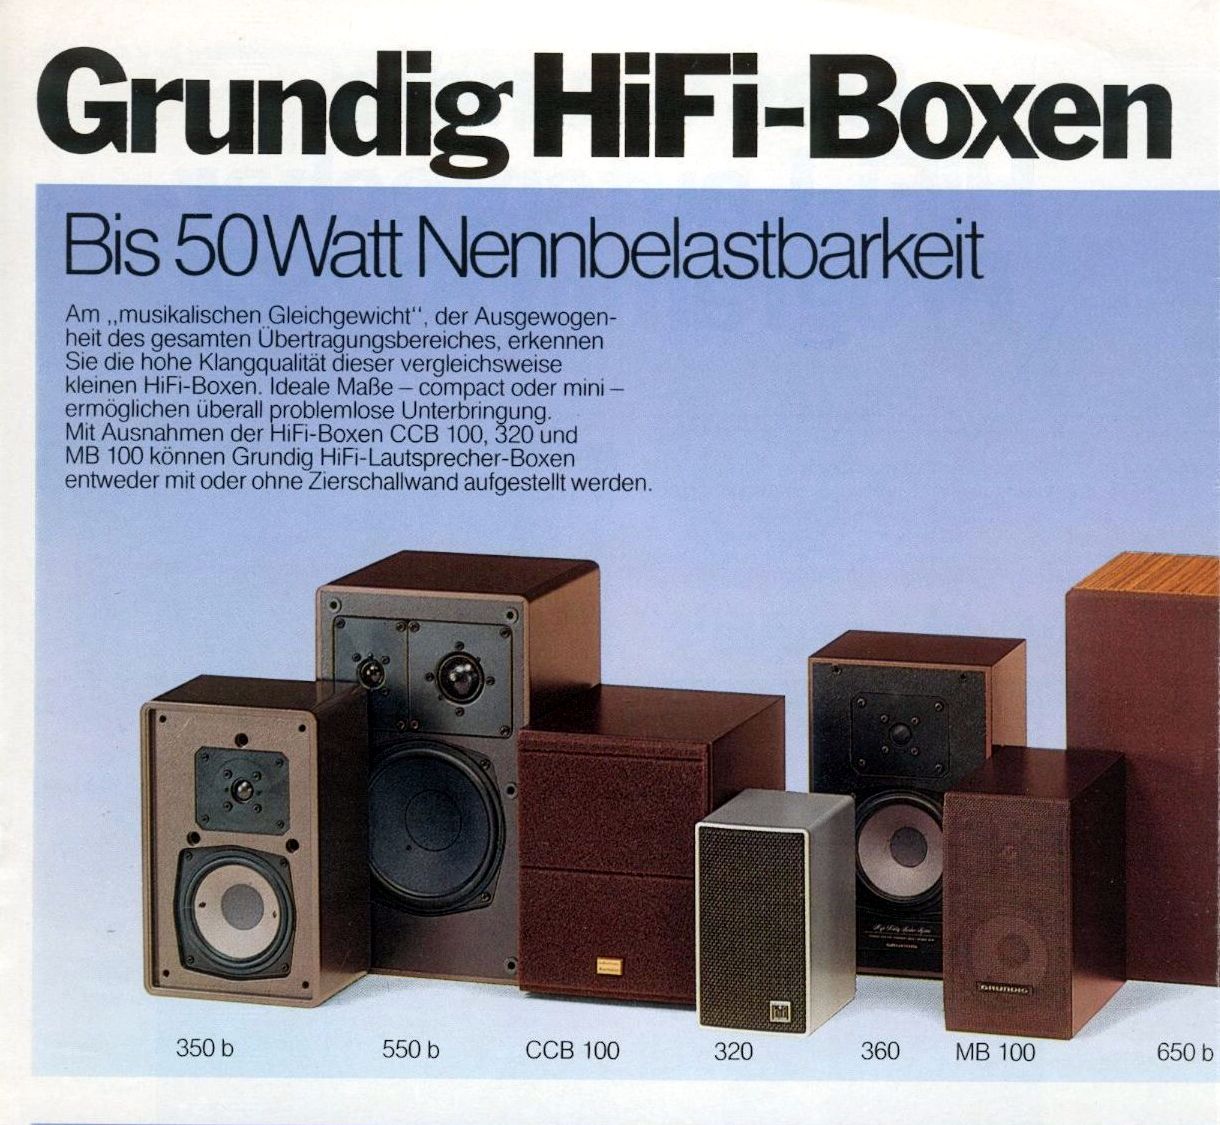 Grundig 50 W-Boxen-1981.jpg